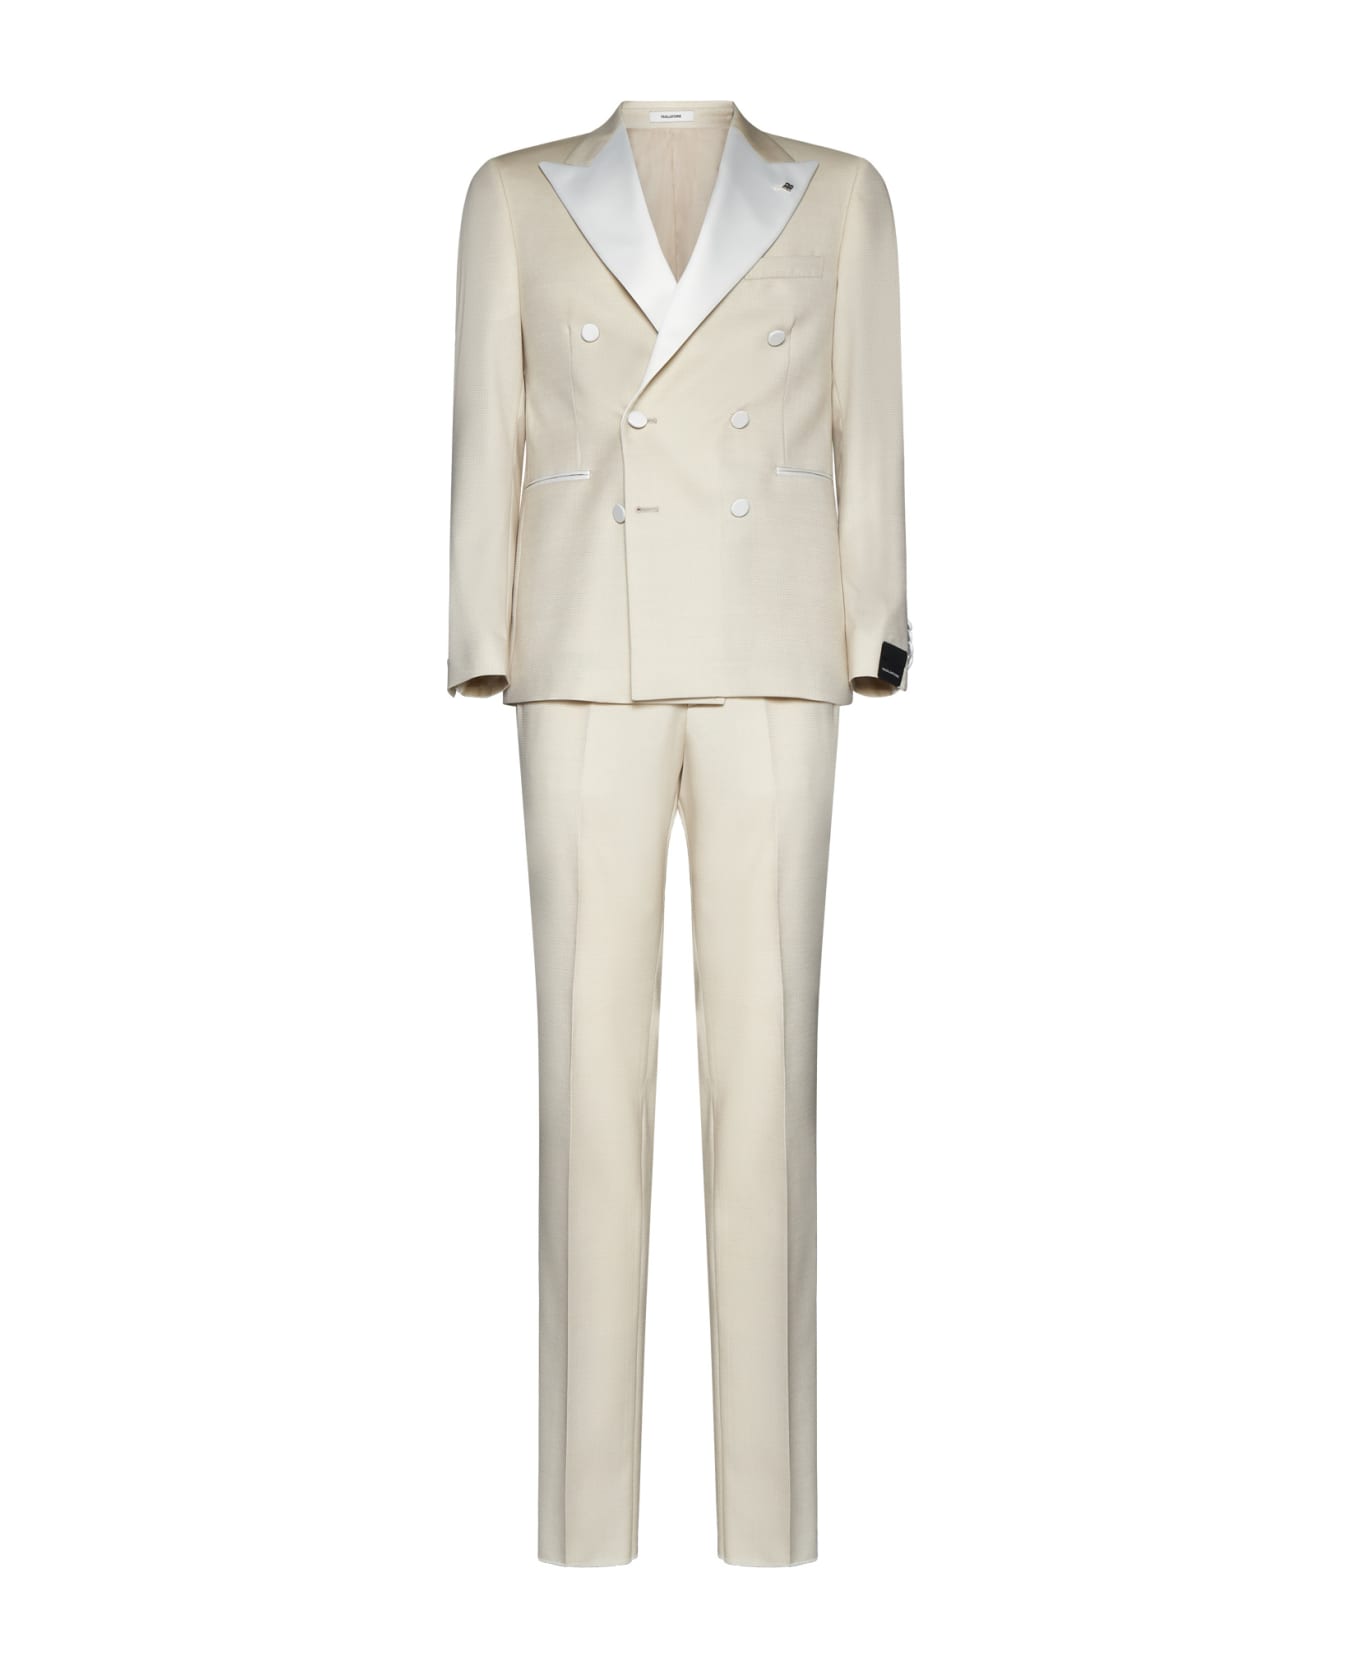 Tagliatore Suit - Avano スーツ